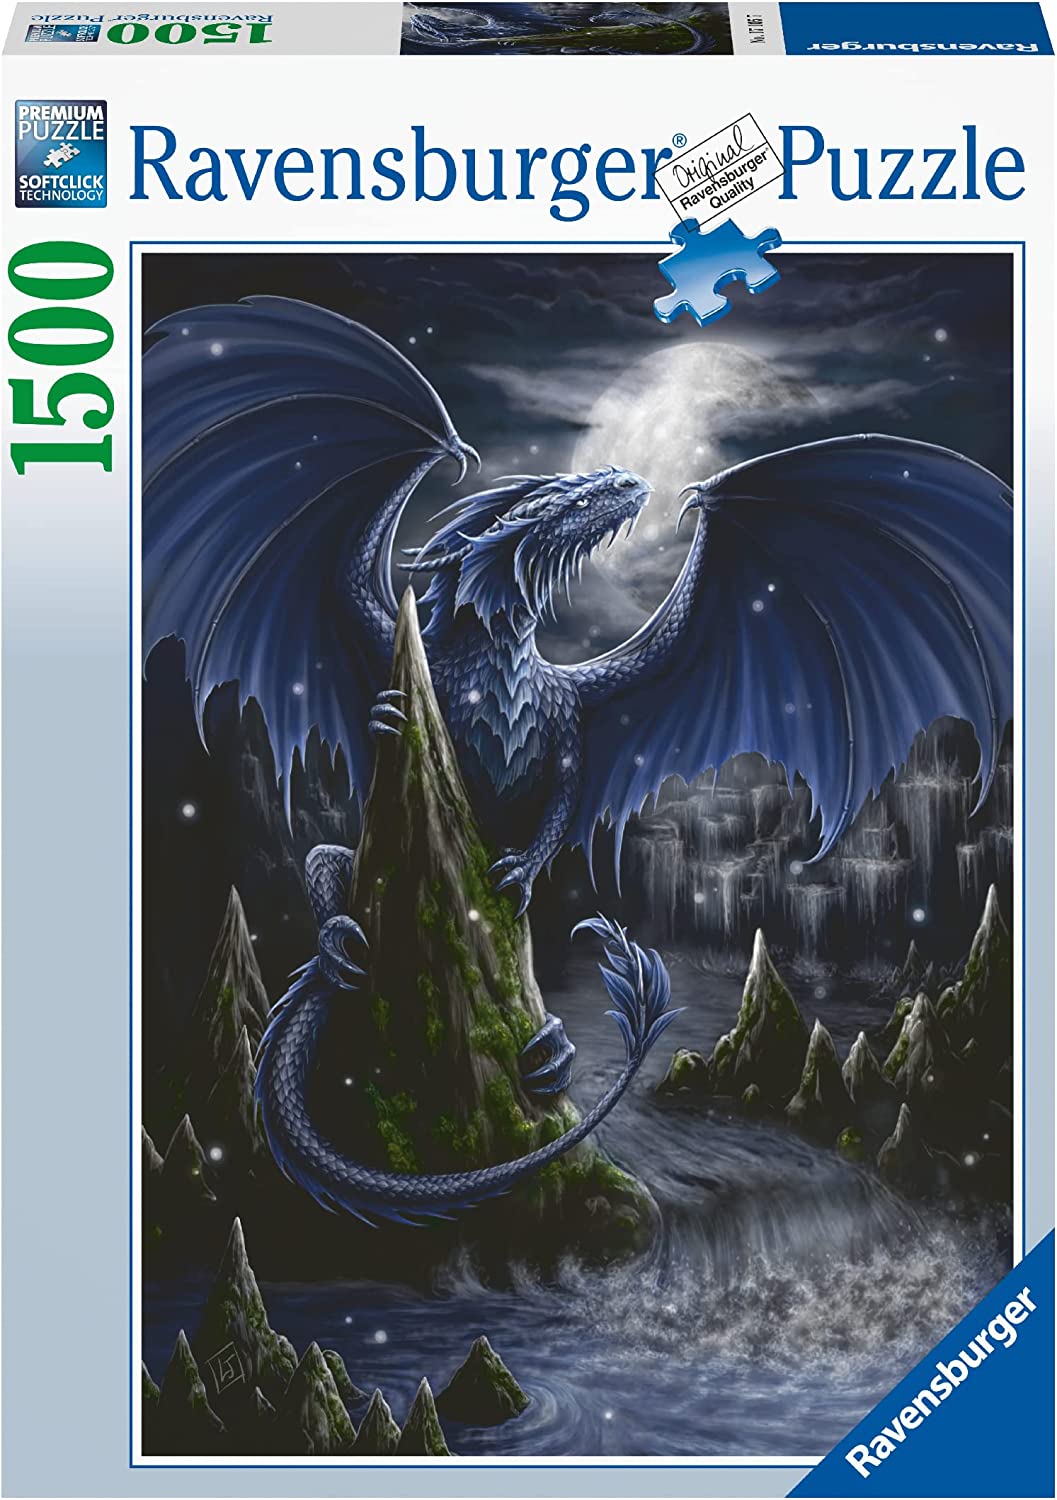 17105 Ravensburger, L'oscuro Drago Blu, Puzzle 1500 Pezzi, Puzzle per Adulti  Fantasy, Illustrazioni Fantasy, Drago, Età 14+ – Full Toys